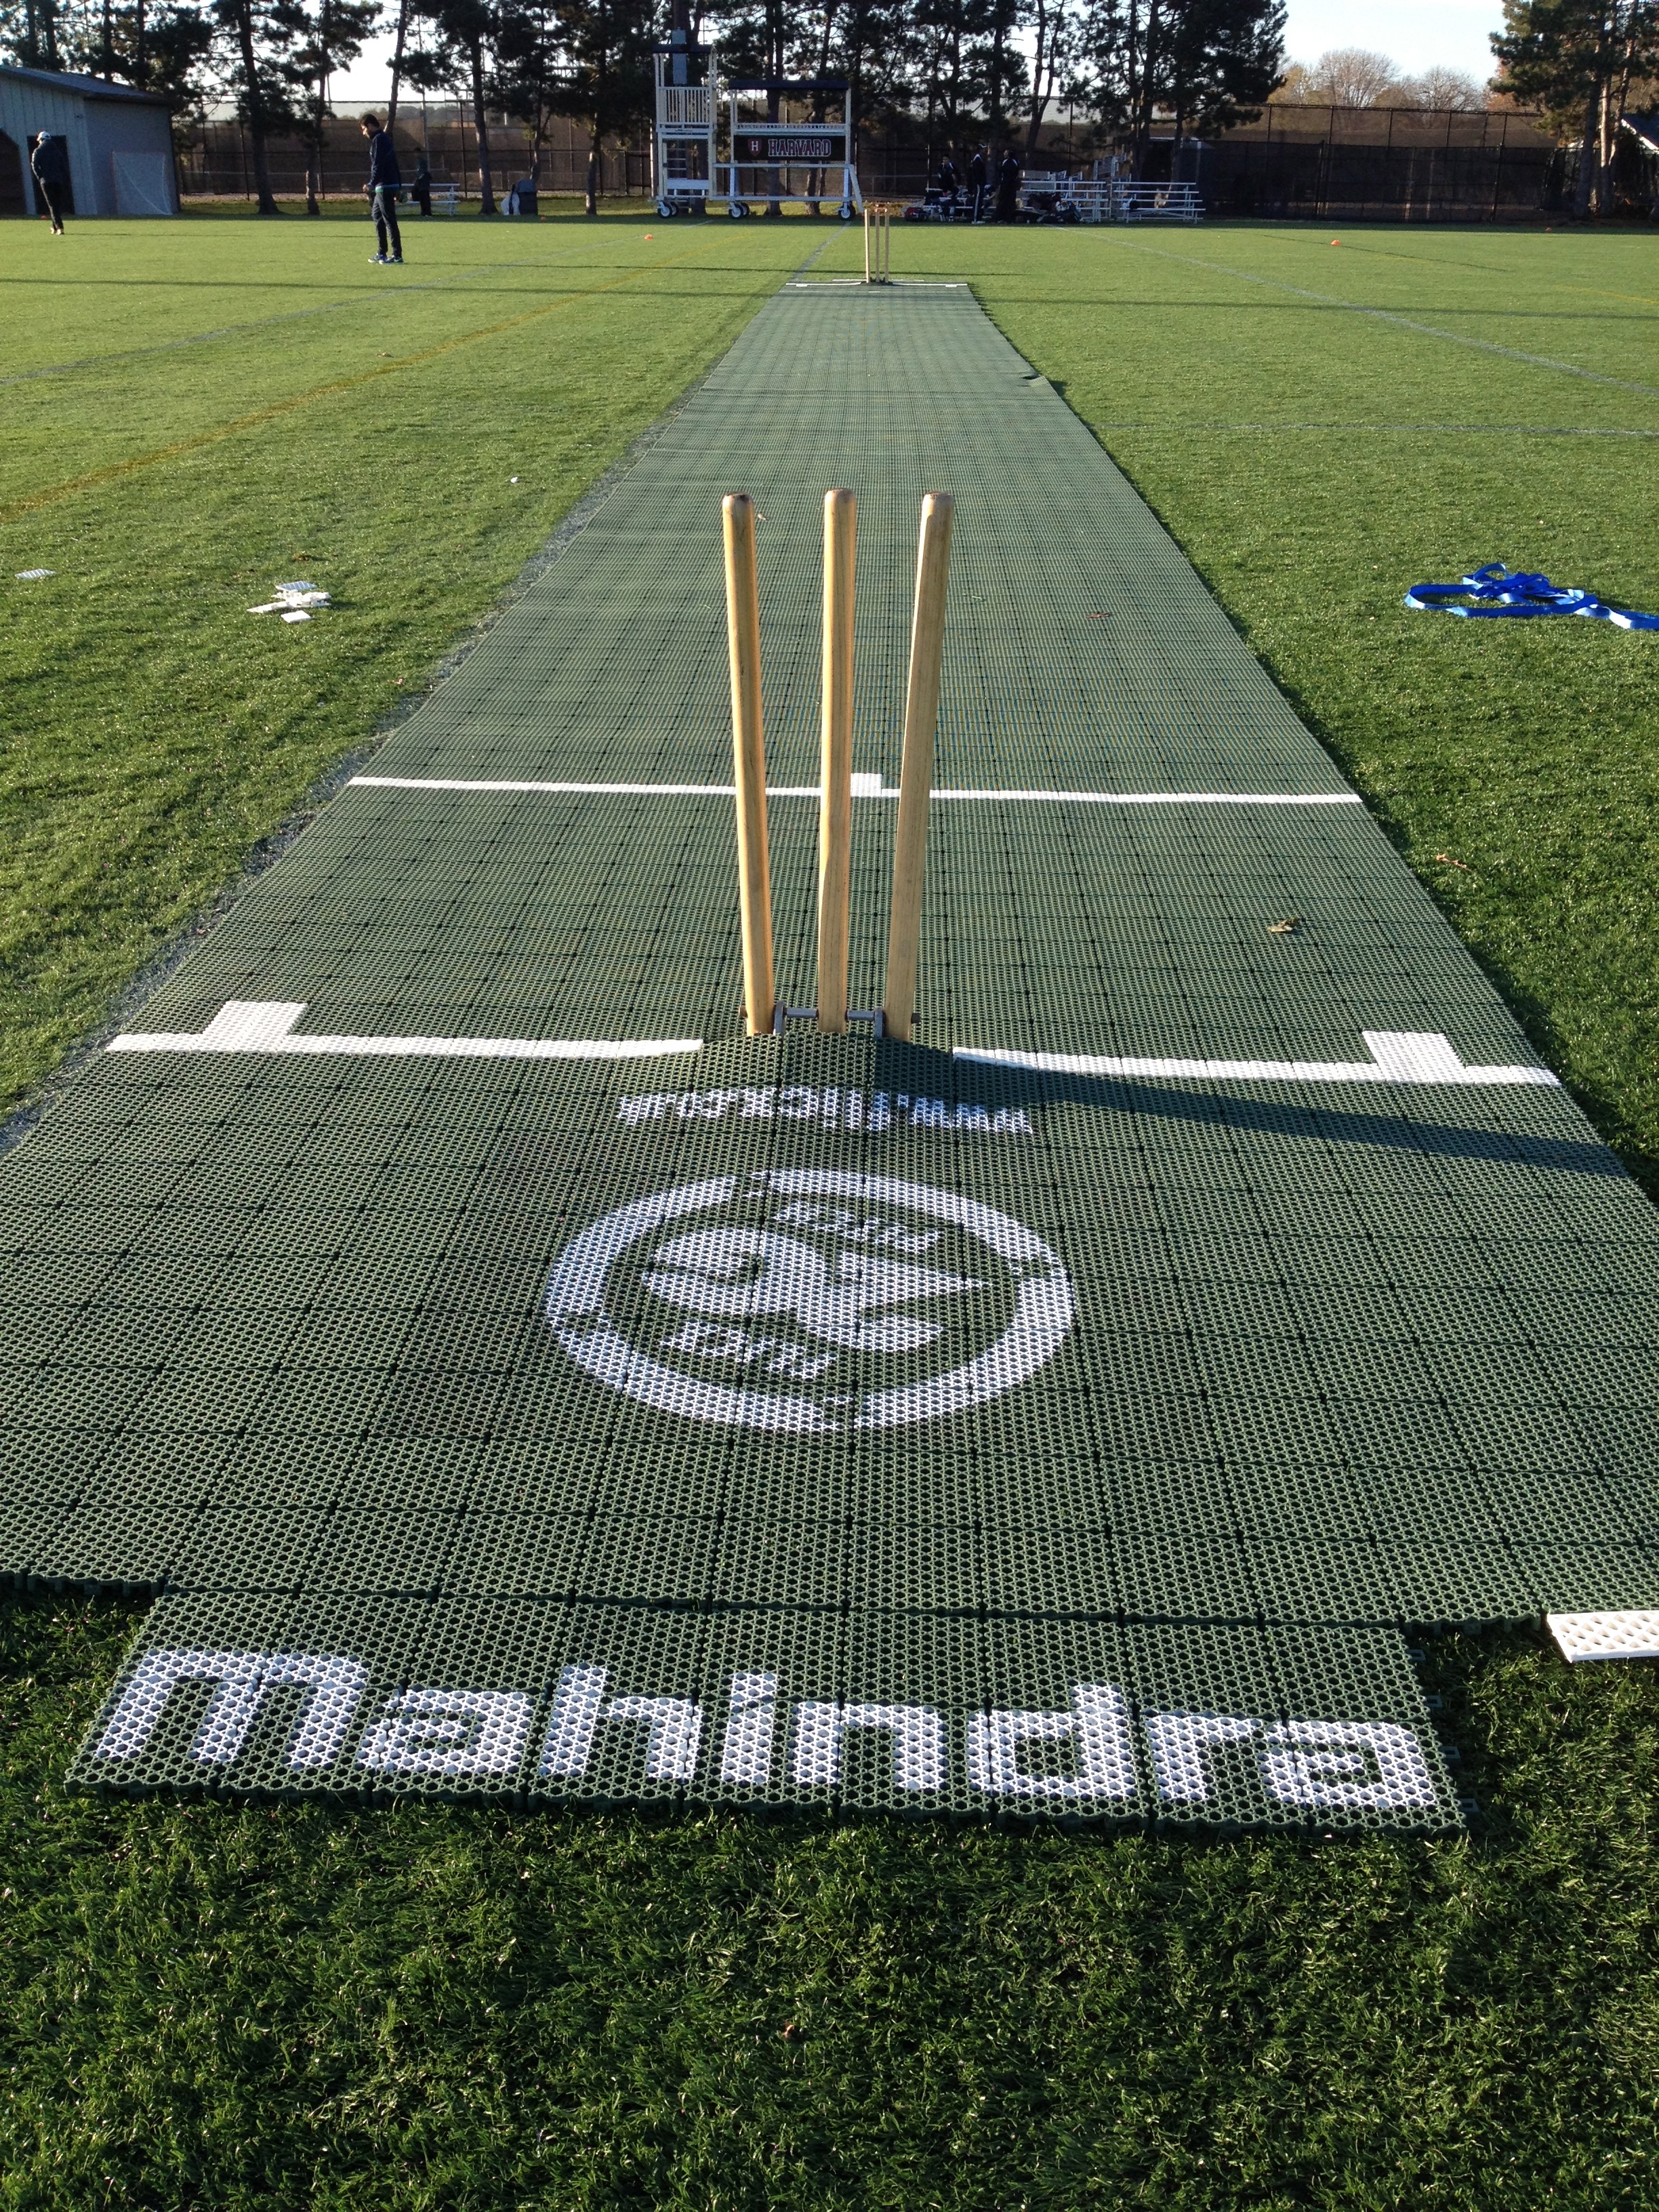 2G Flicx Pitch, Harvard Cricket Club Case Study - Guest blog by Manik Kuchr...